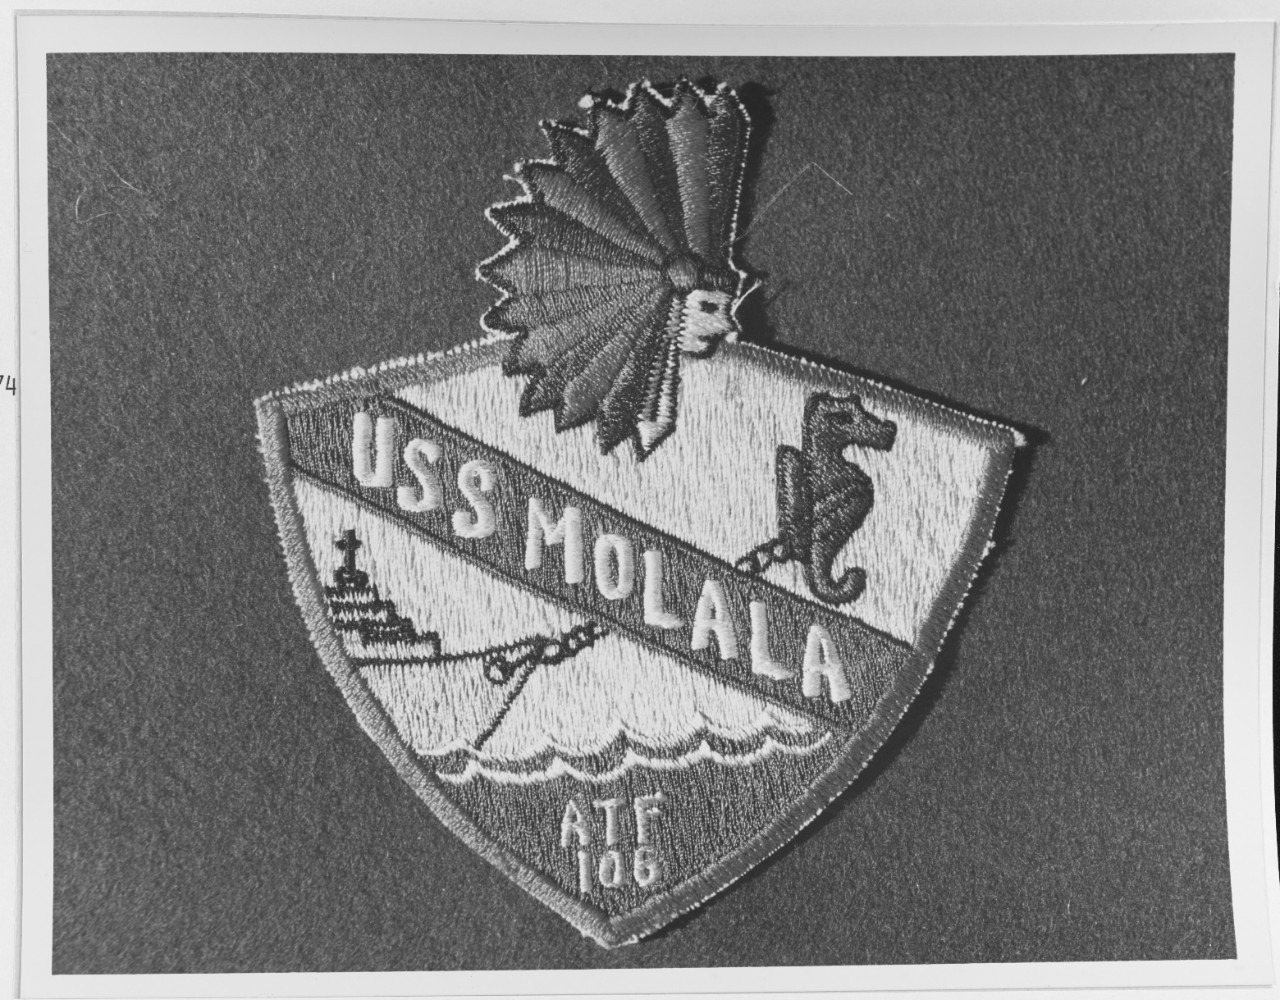 Insignia:  USS MOLALA (DE-106)